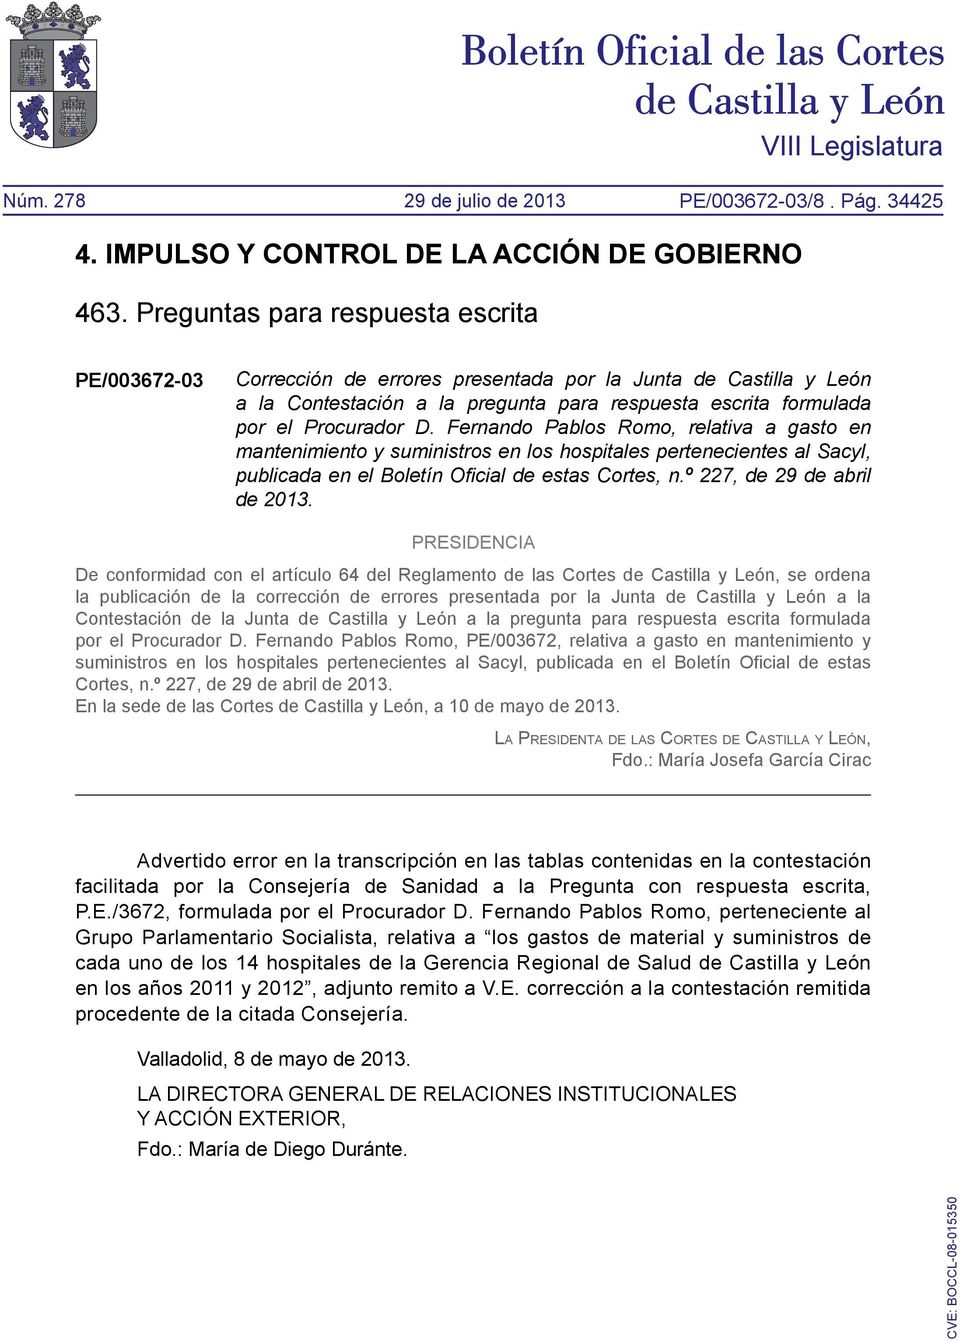 PRESIDENCIA De conformidad con el artículo 64 del Reglamento de las Cortes de Castilla y León, se ordena la publicación de la corrección de errores presentada por la Junta de Castilla y León a la